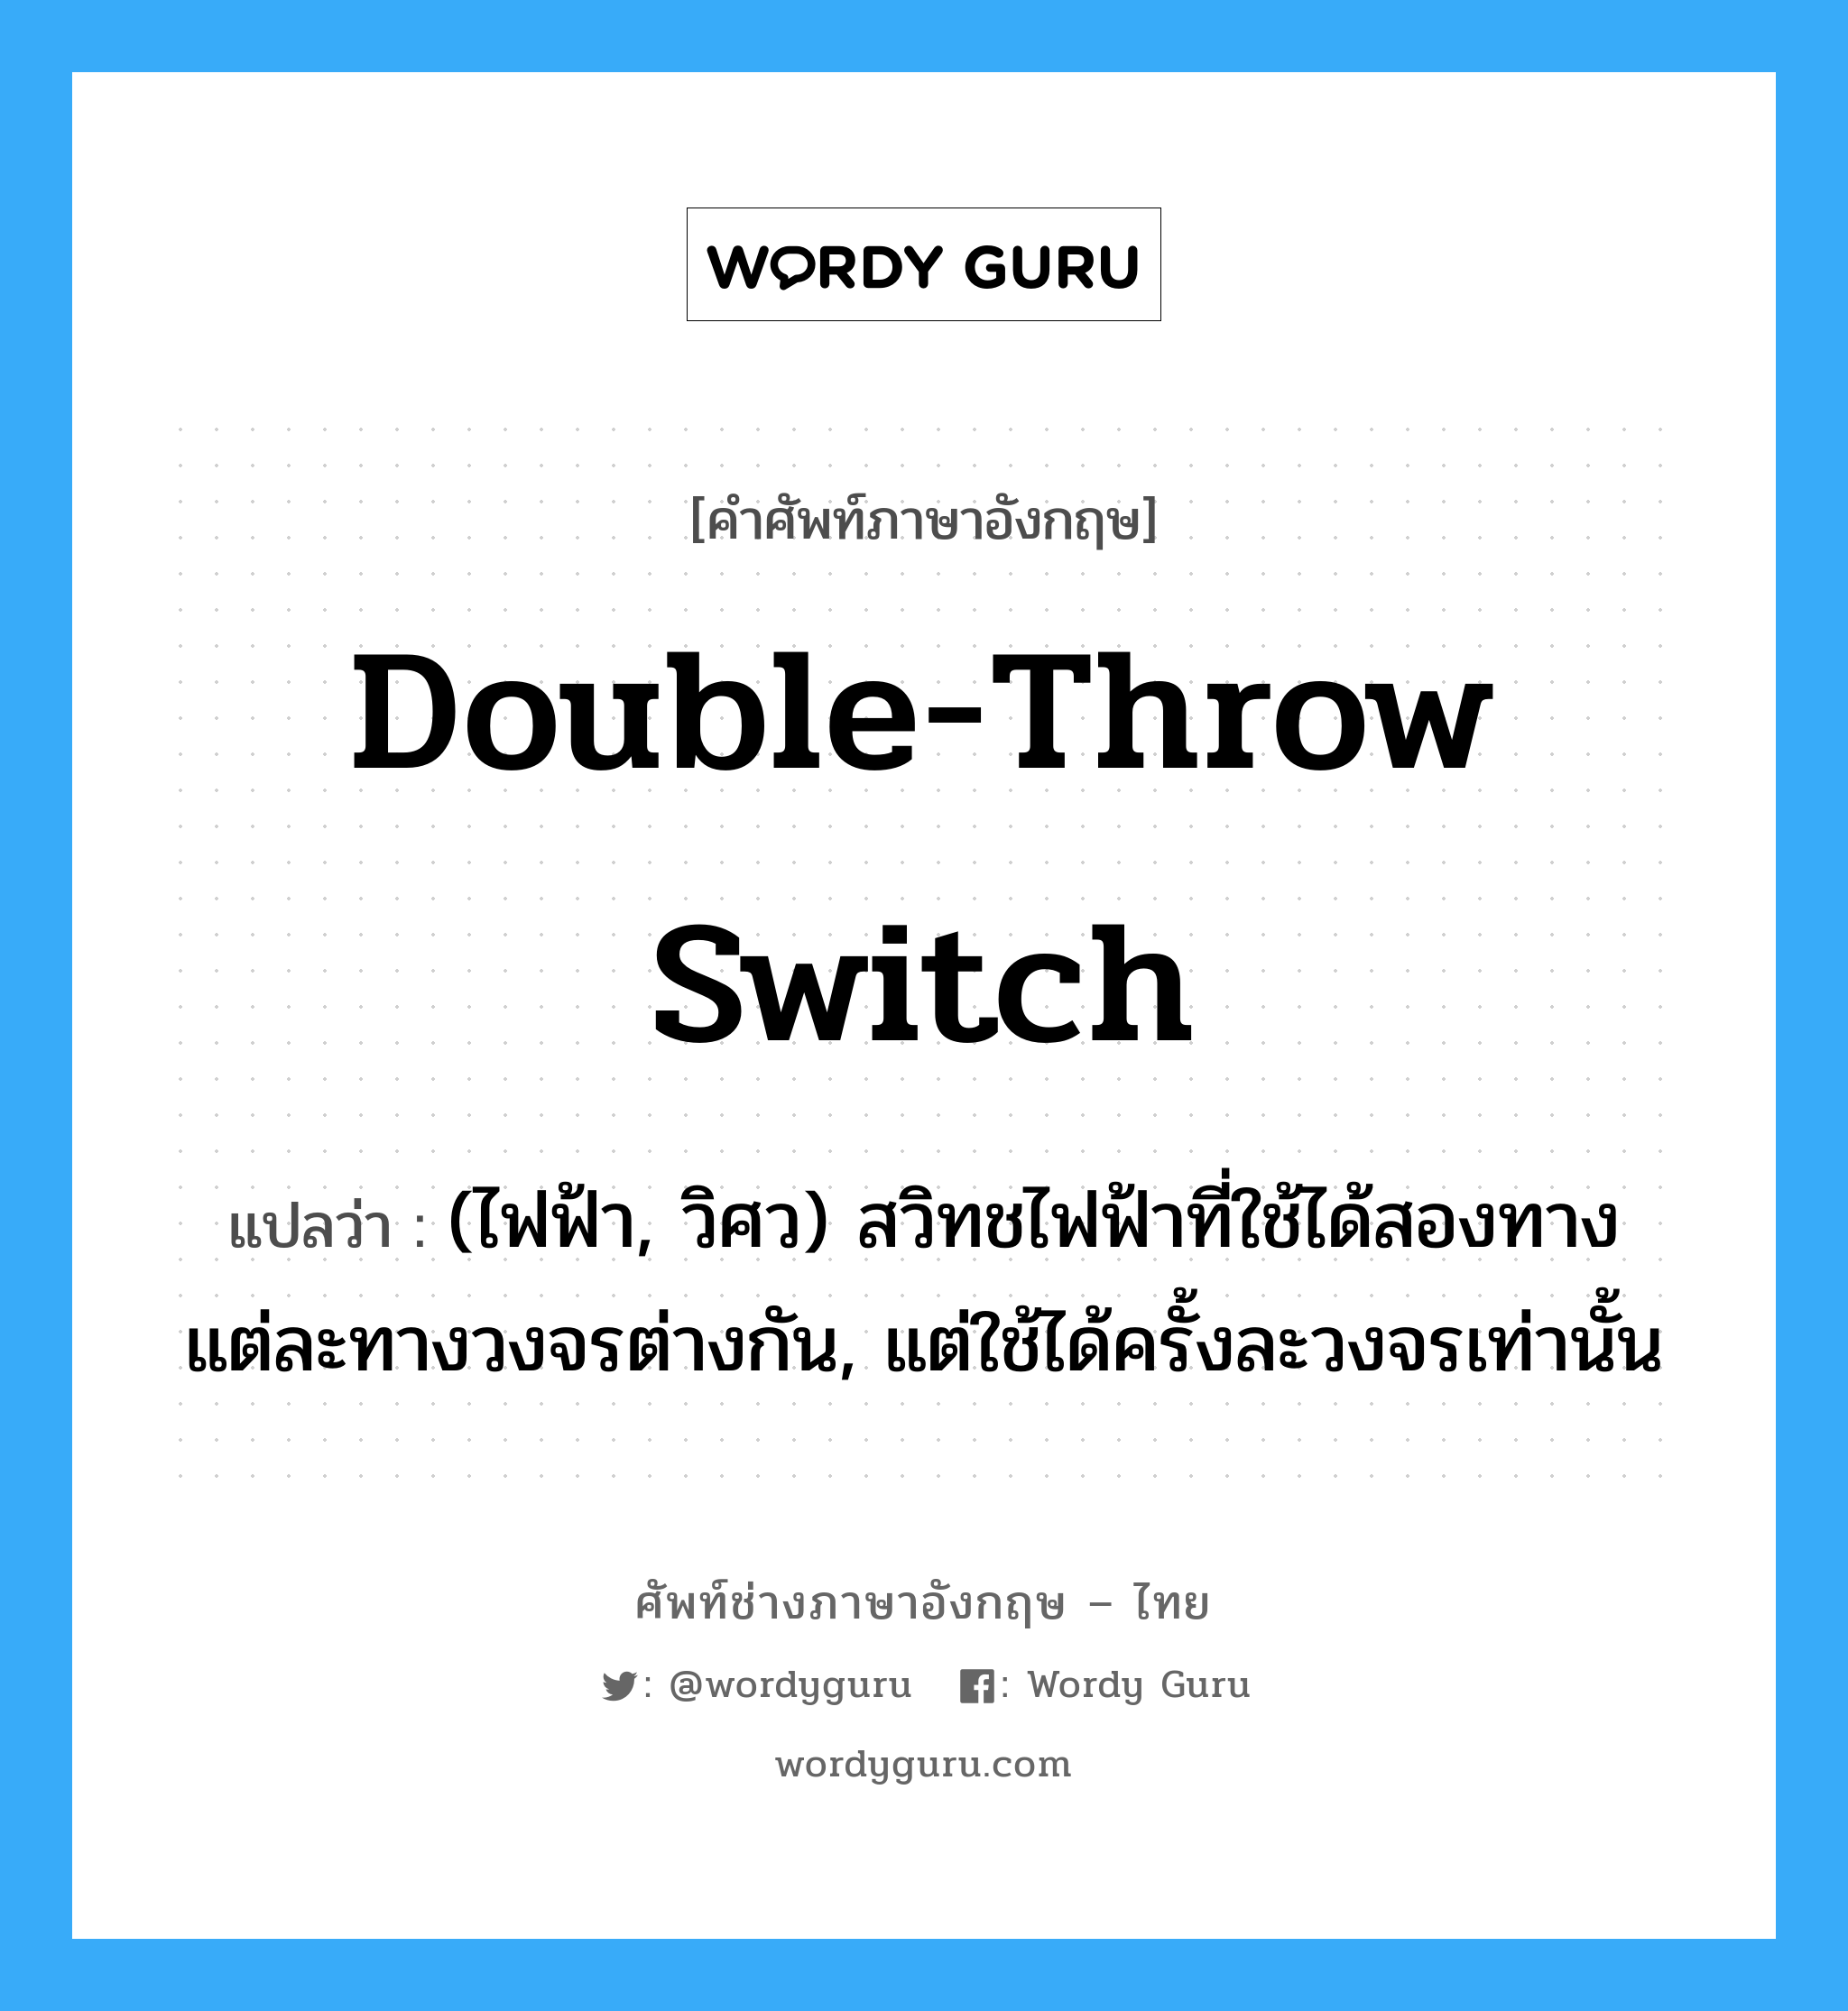 double-throw switch แปลว่า?, คำศัพท์ช่างภาษาอังกฤษ - ไทย double-throw switch คำศัพท์ภาษาอังกฤษ double-throw switch แปลว่า (ไฟฟ้า, วิศว) สวิทชไฟฟ้าที่ใช้ได้สองทาง แต่ละทางวงจรต่างกัน, แต่ใช้ได้ครั้งละวงจรเท่านั้น